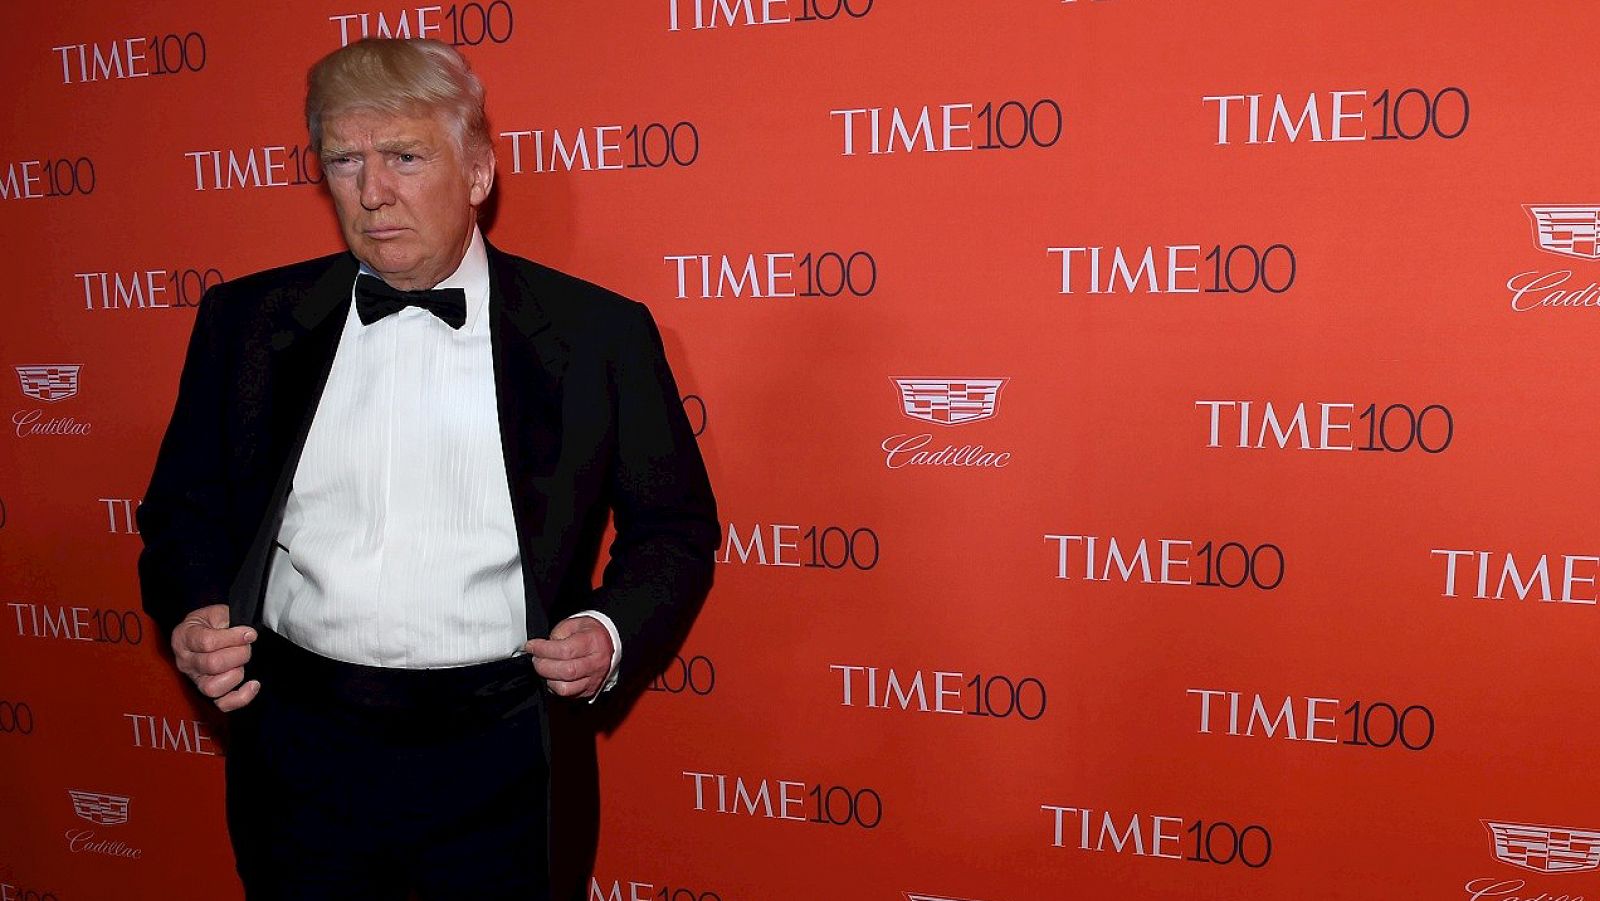 El candidato republicano Donald Trump, en una gala en Nueva York, el 26 de abril de 2016. AFP PHOTO / TIMOTHY A. CLARY